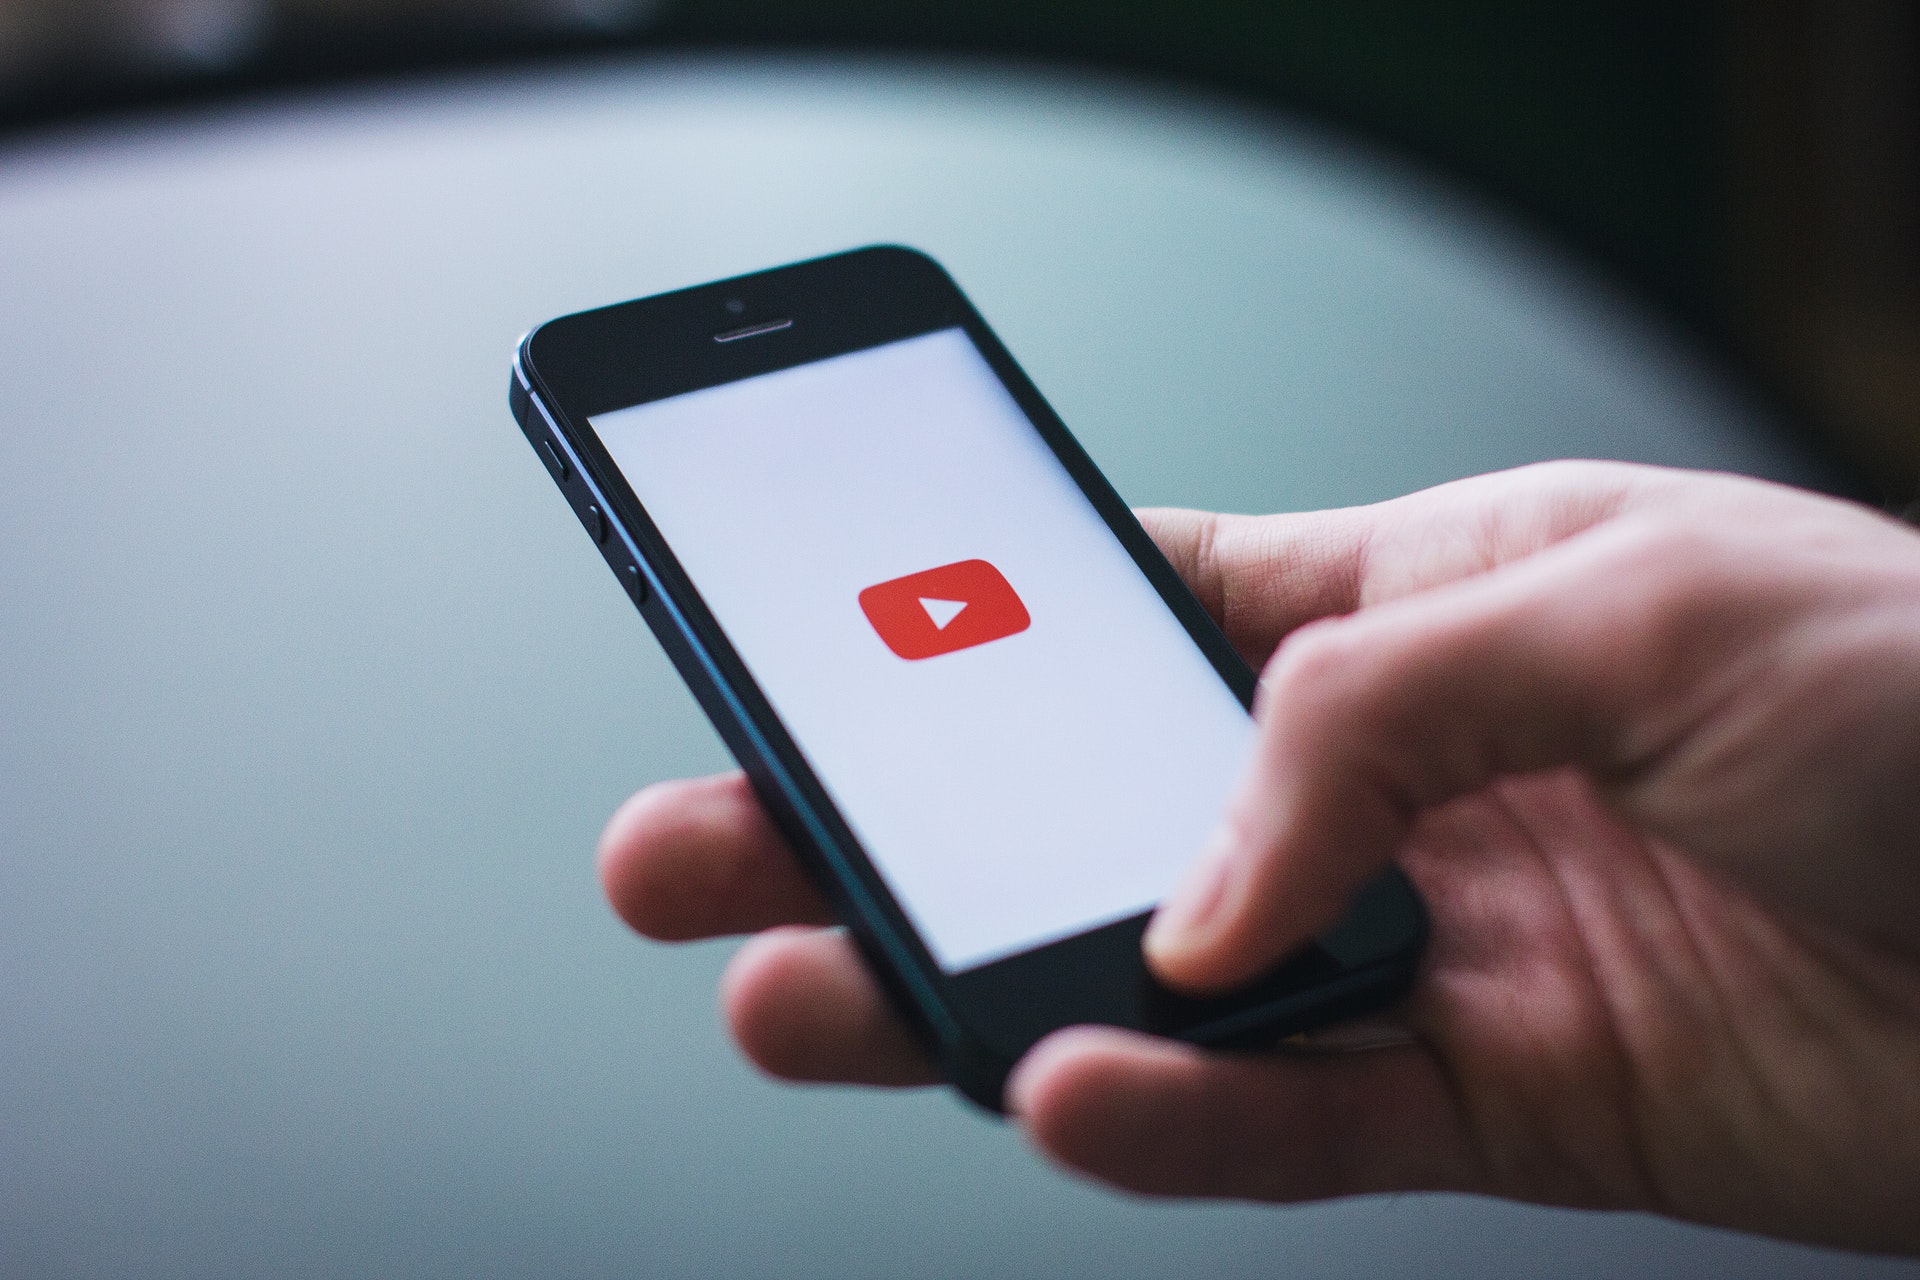 MOBILE ADVERTISING - YouTube dla reklamodawców - zarządzanie bezpieczeństwem i spójnością marki SoMe YouTube dla reklamodawcow zarzadzanie bezpieczenstwem i spojnoscia marki